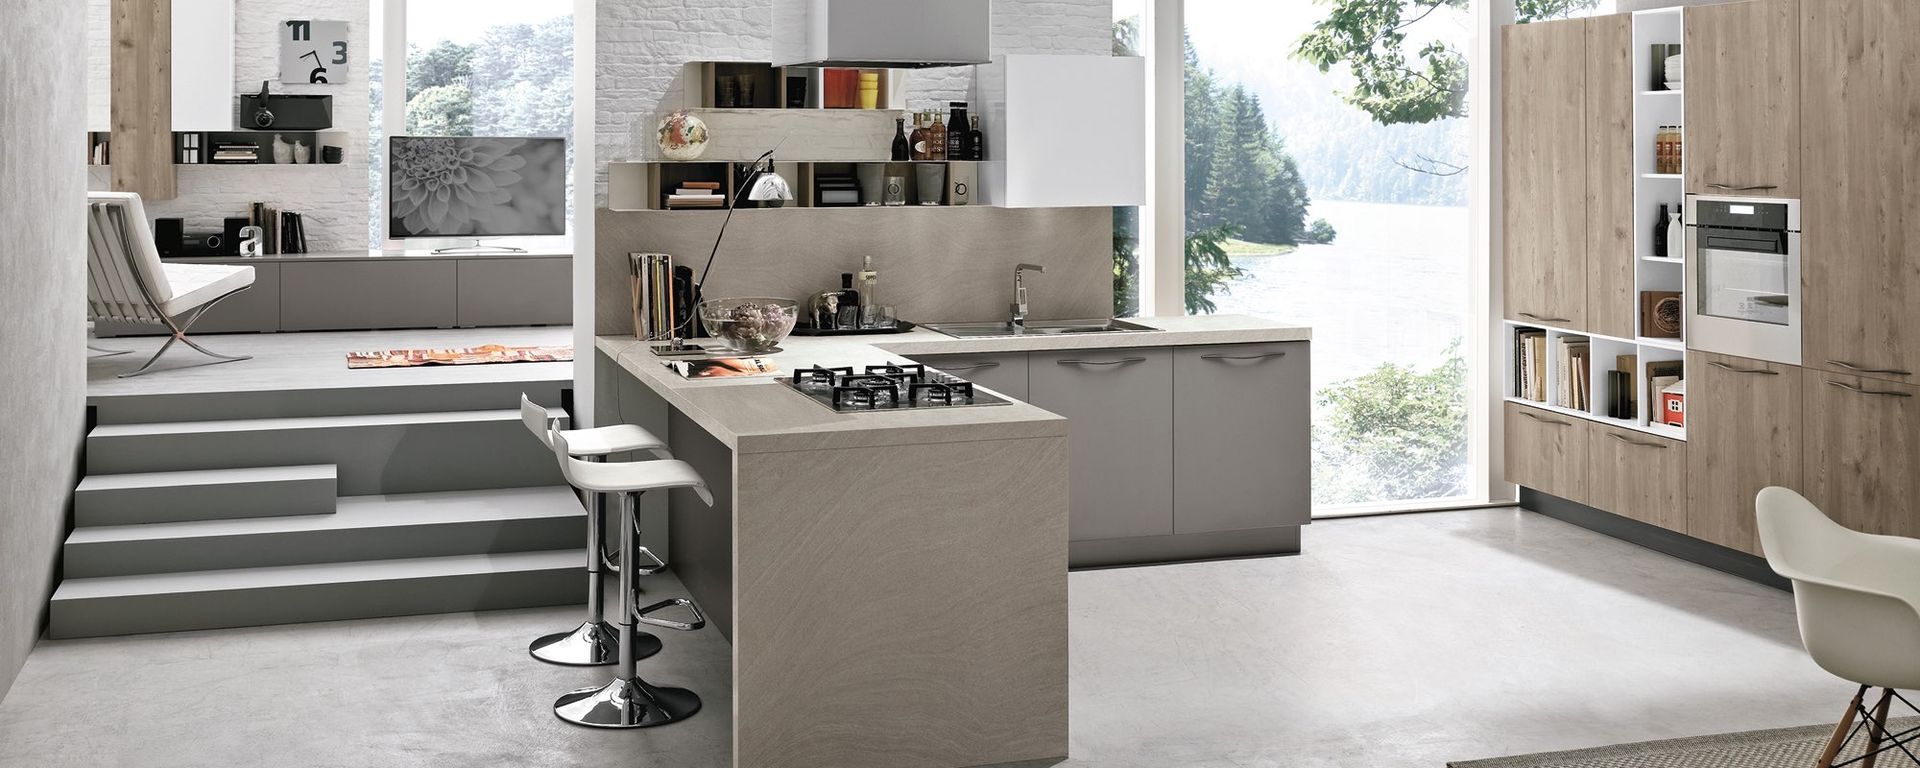 vista frontale di una cucina moderna in legno con scala interna e arredamento